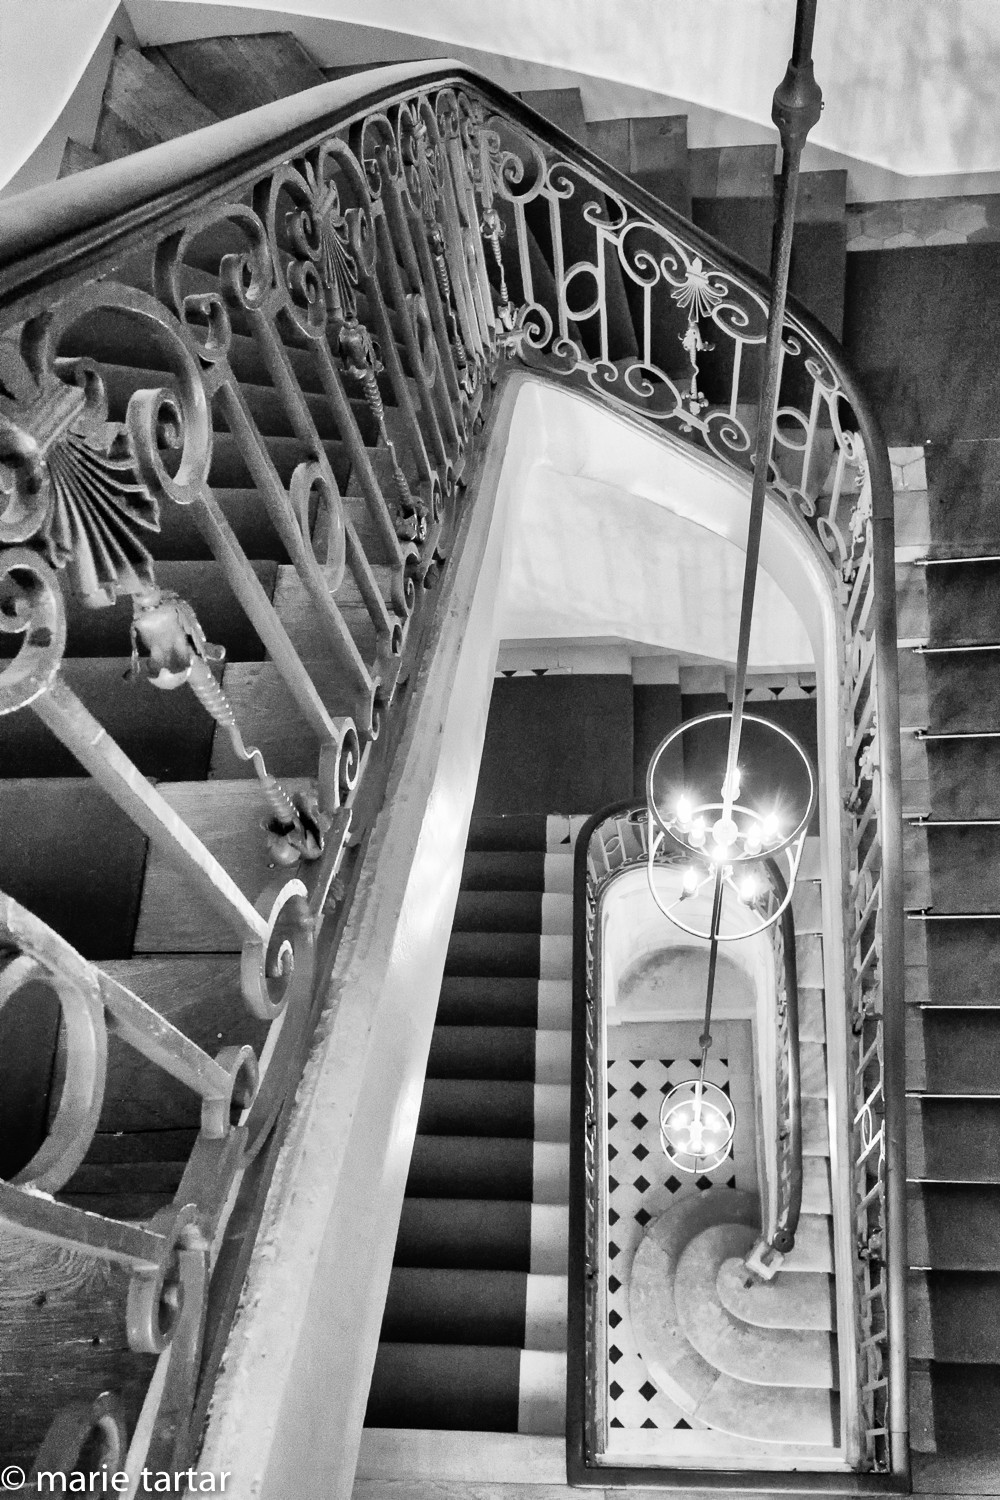 Staircase at Maison Européene de la Photographie